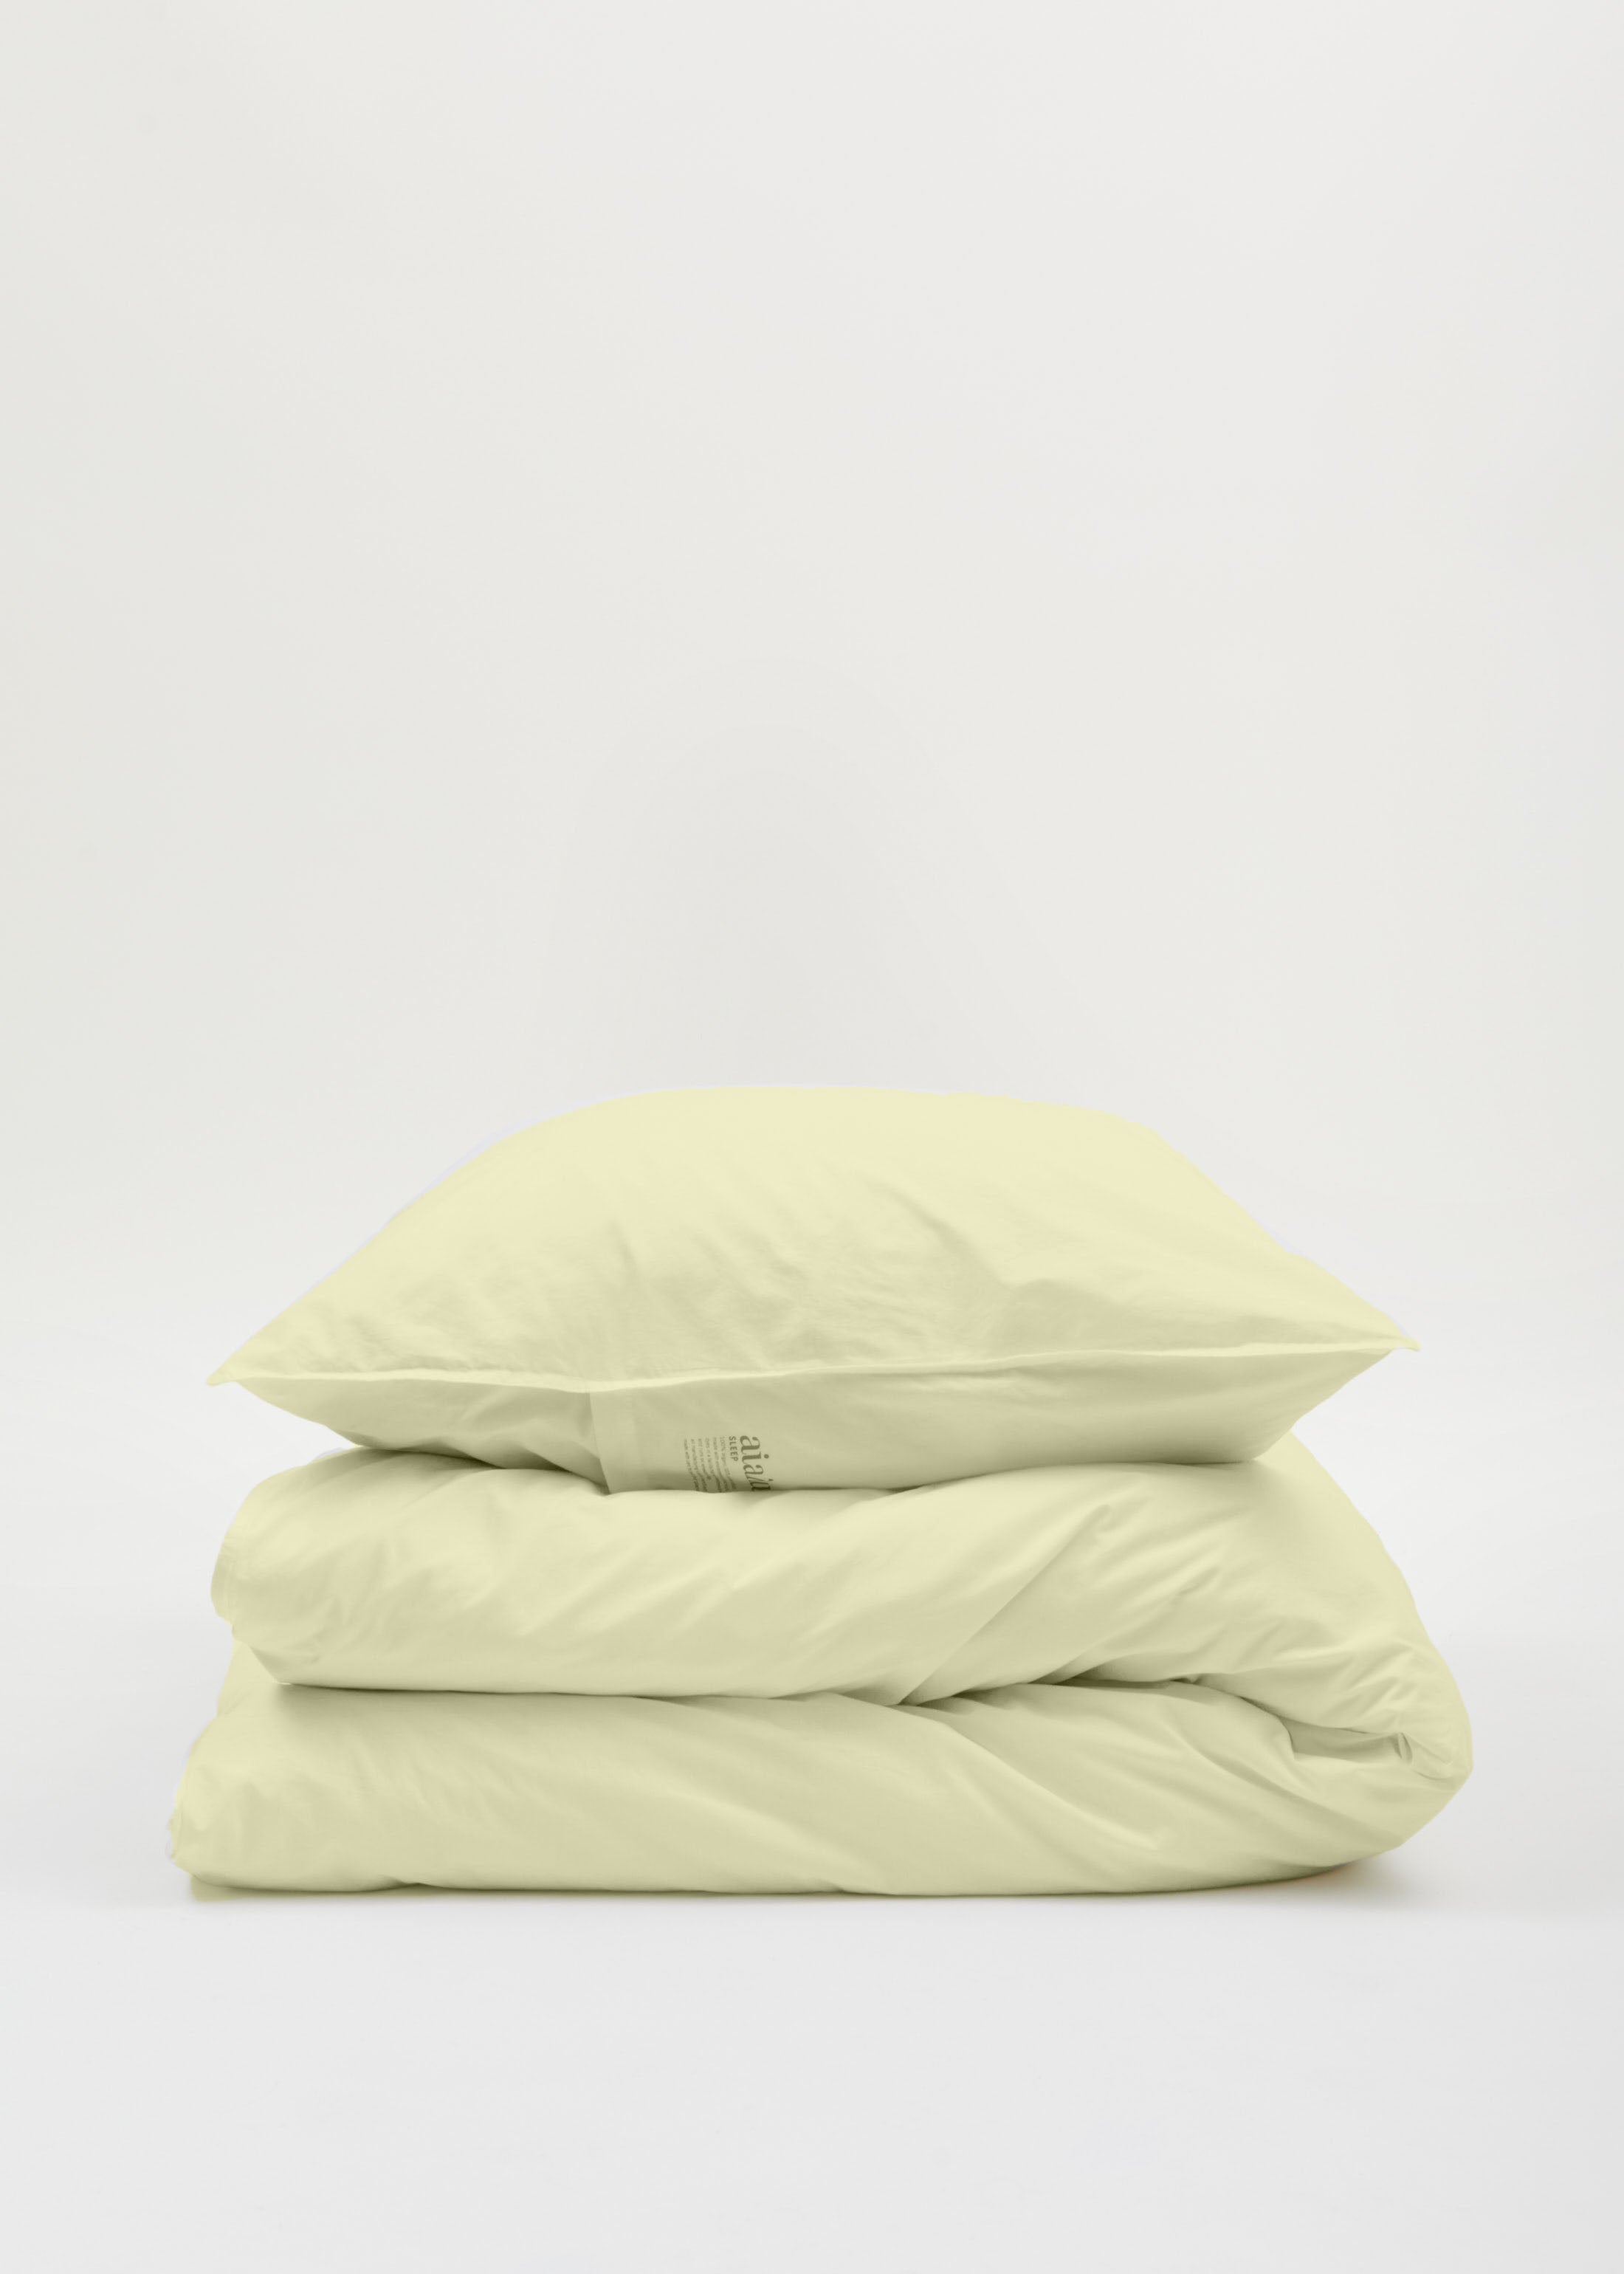 Duvet set 140x220 & pillow case - limone | Limone